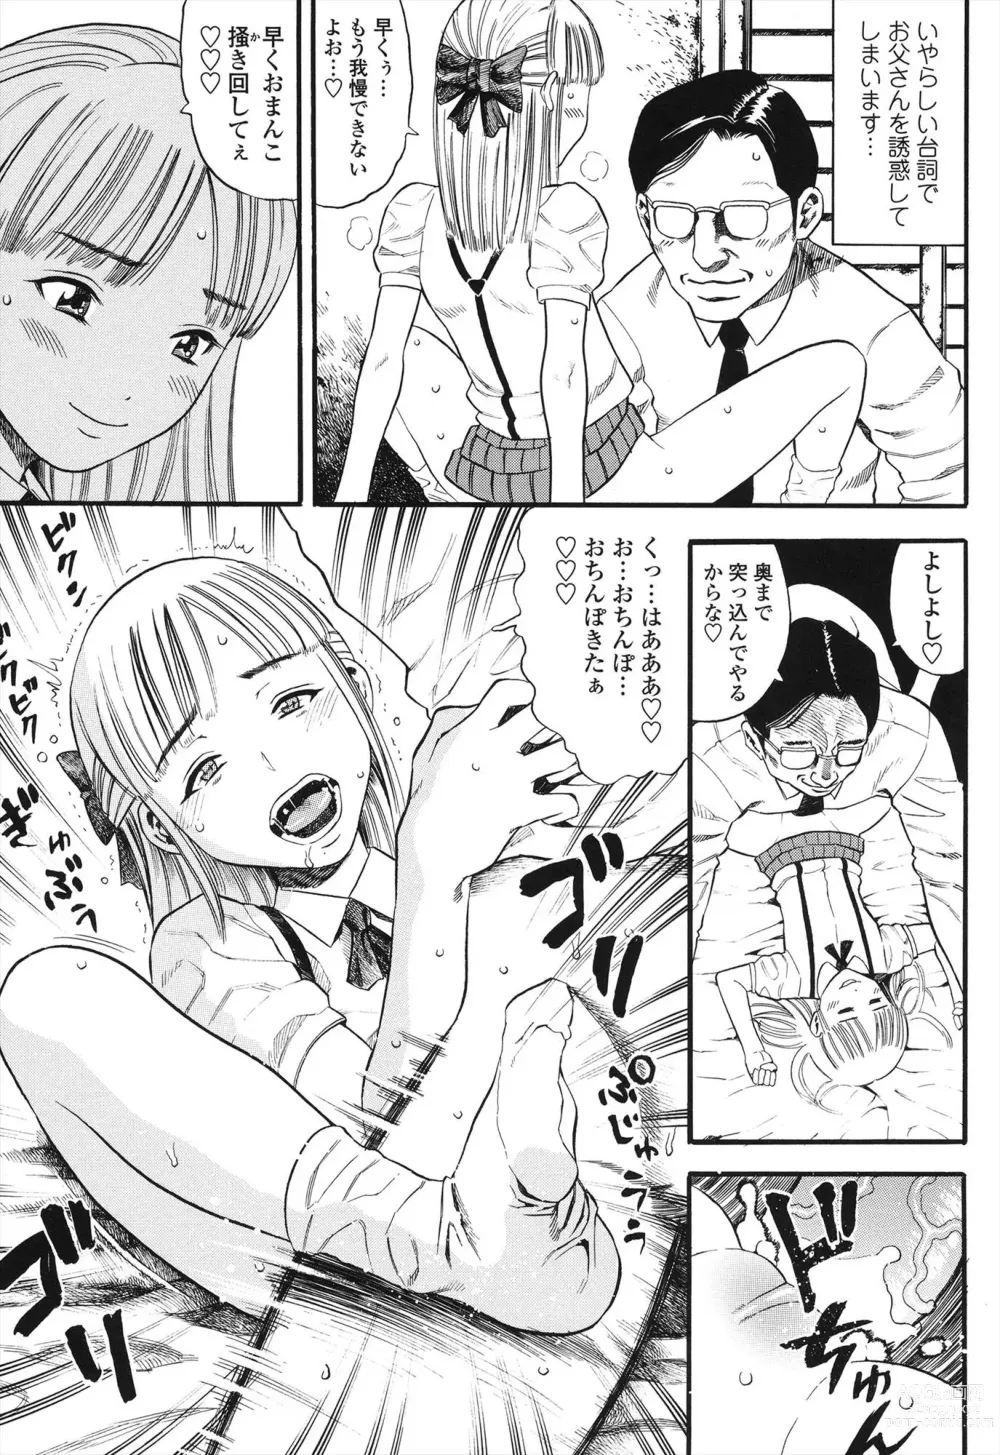 Page 7 of manga Shogaku Gakusei